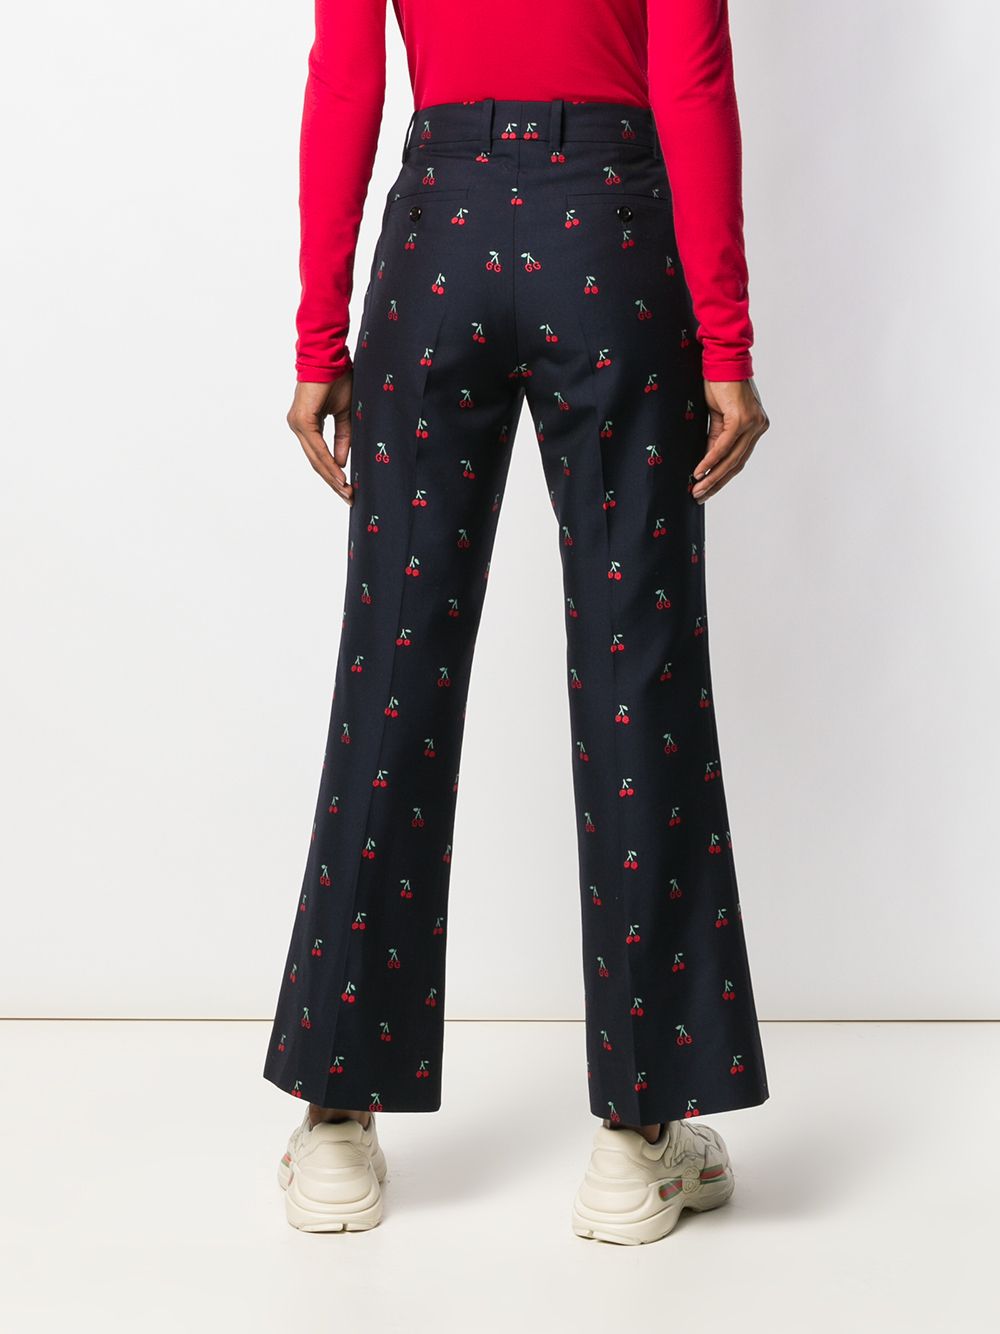 фото Gucci расклешенные брюки из ткани филькупе